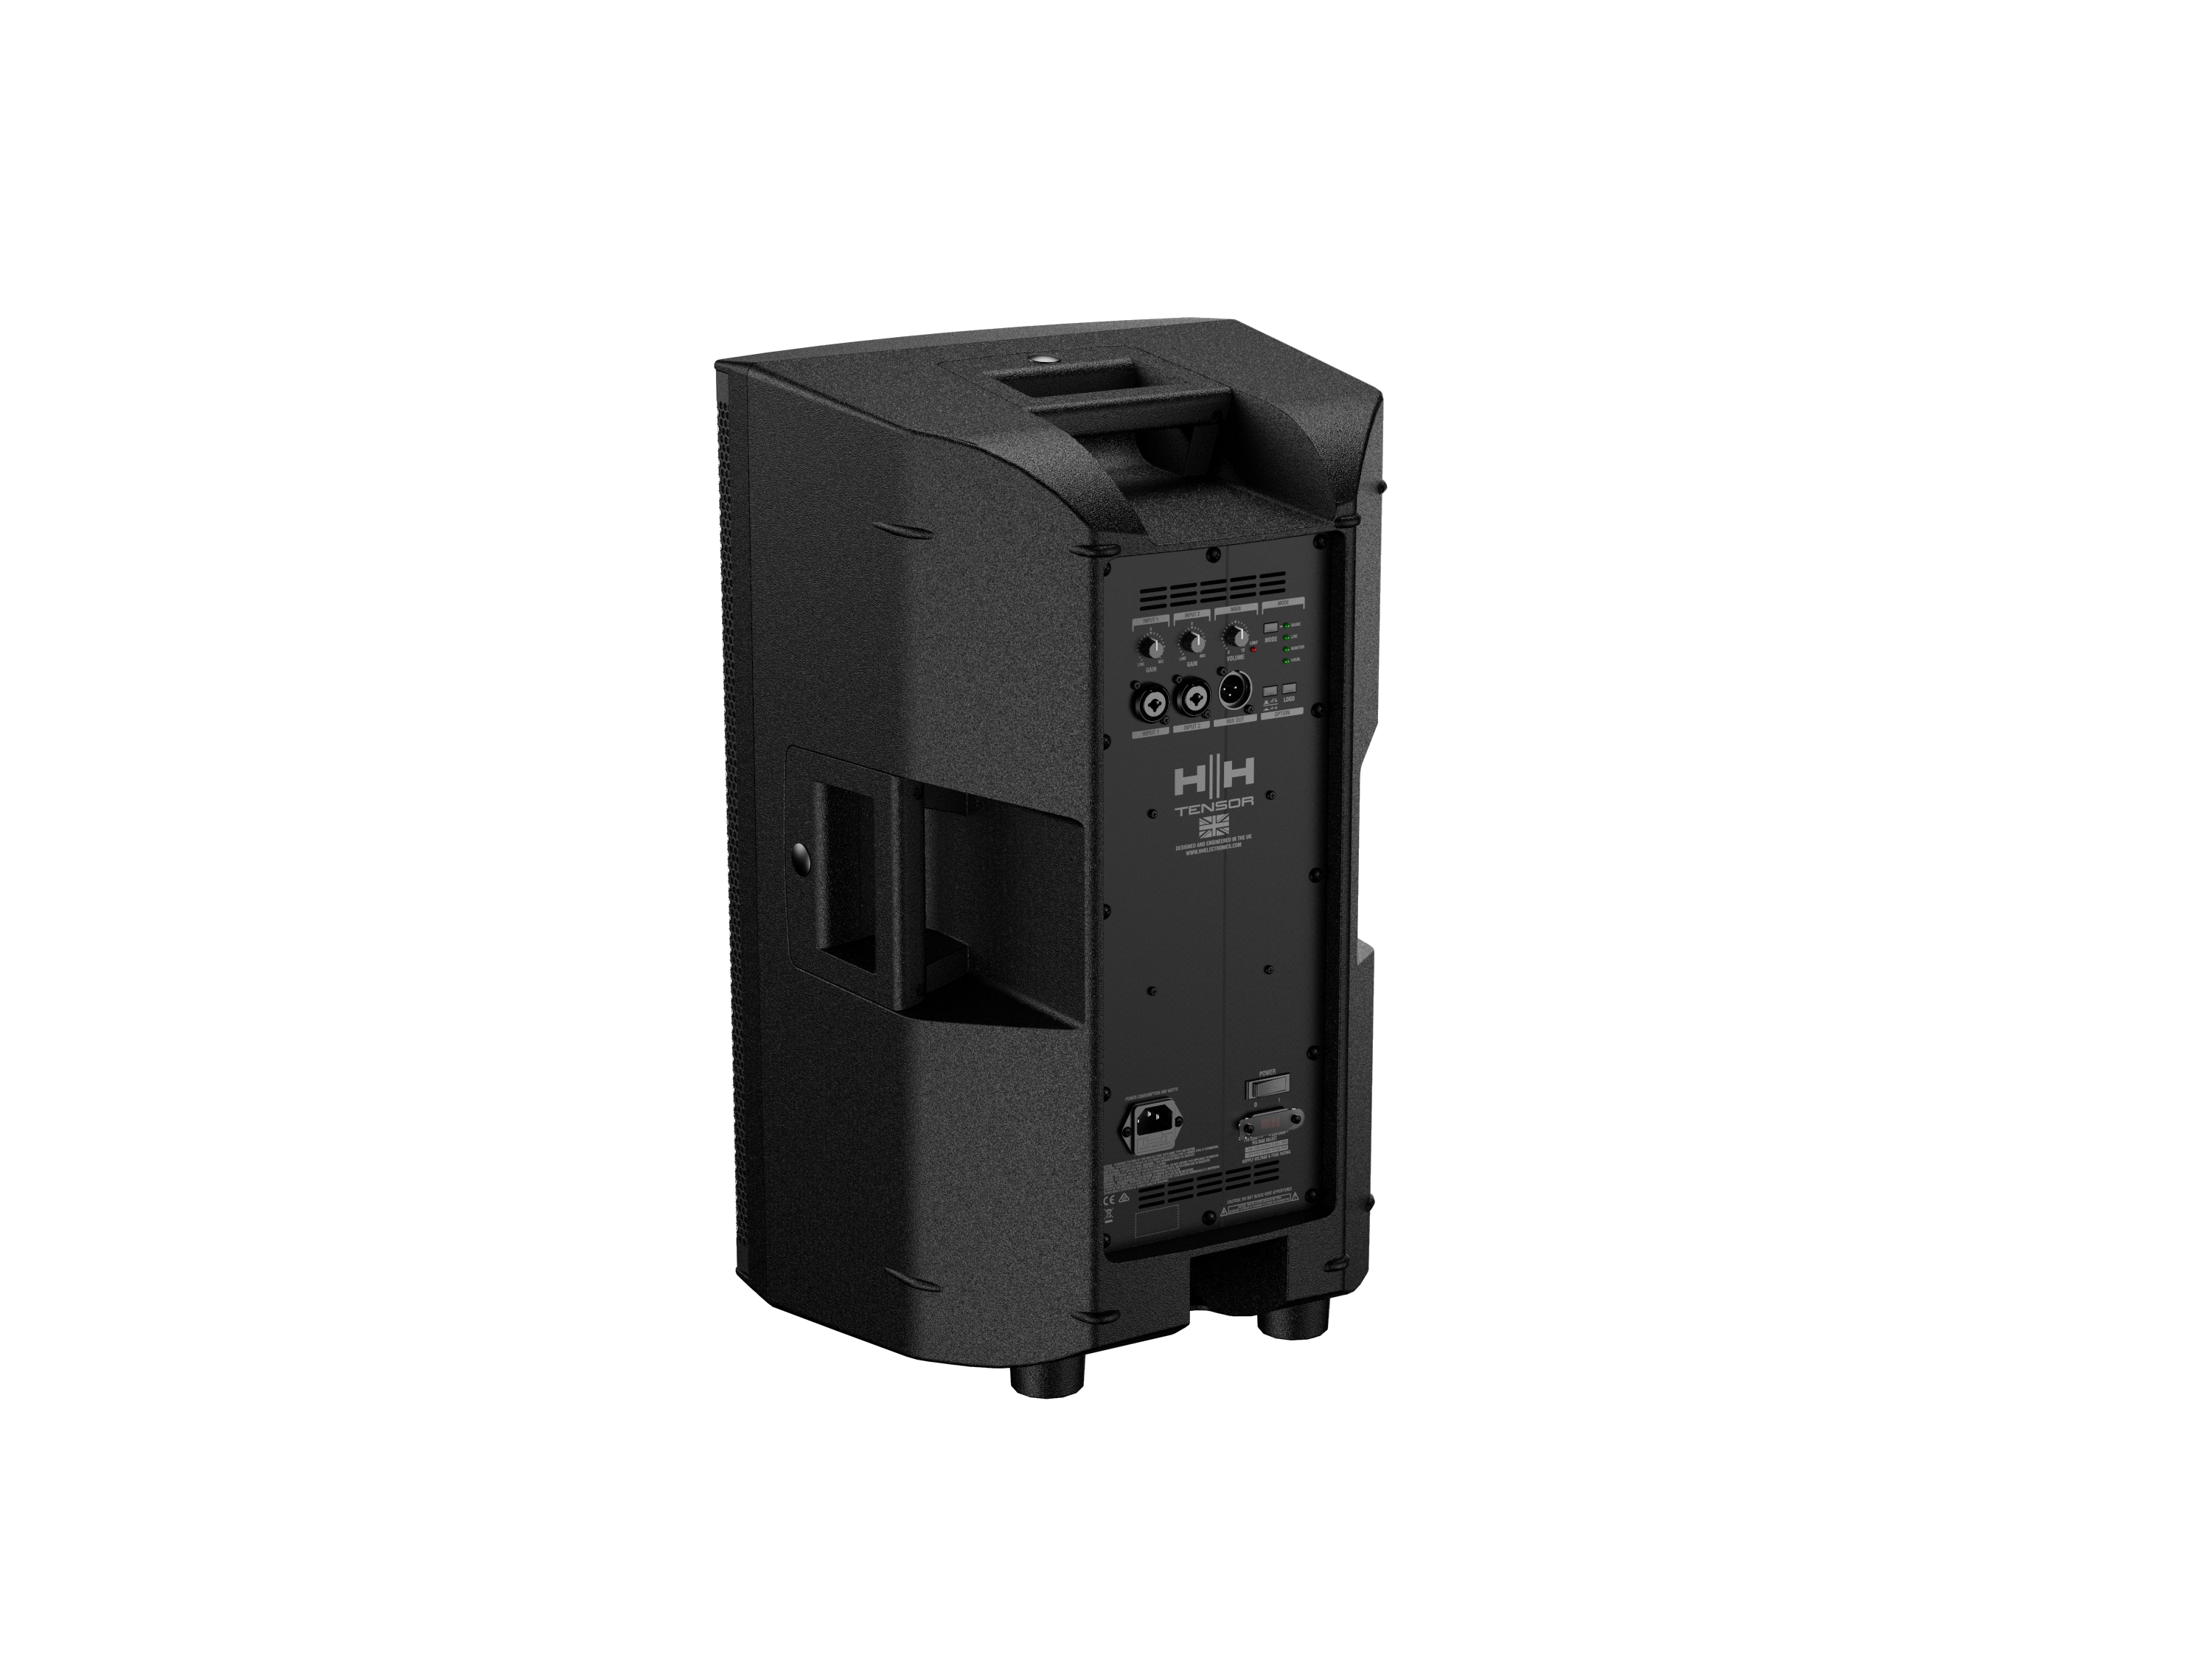 HH Tensor TRE-1201 Portable Sound System Class D-Amplifier